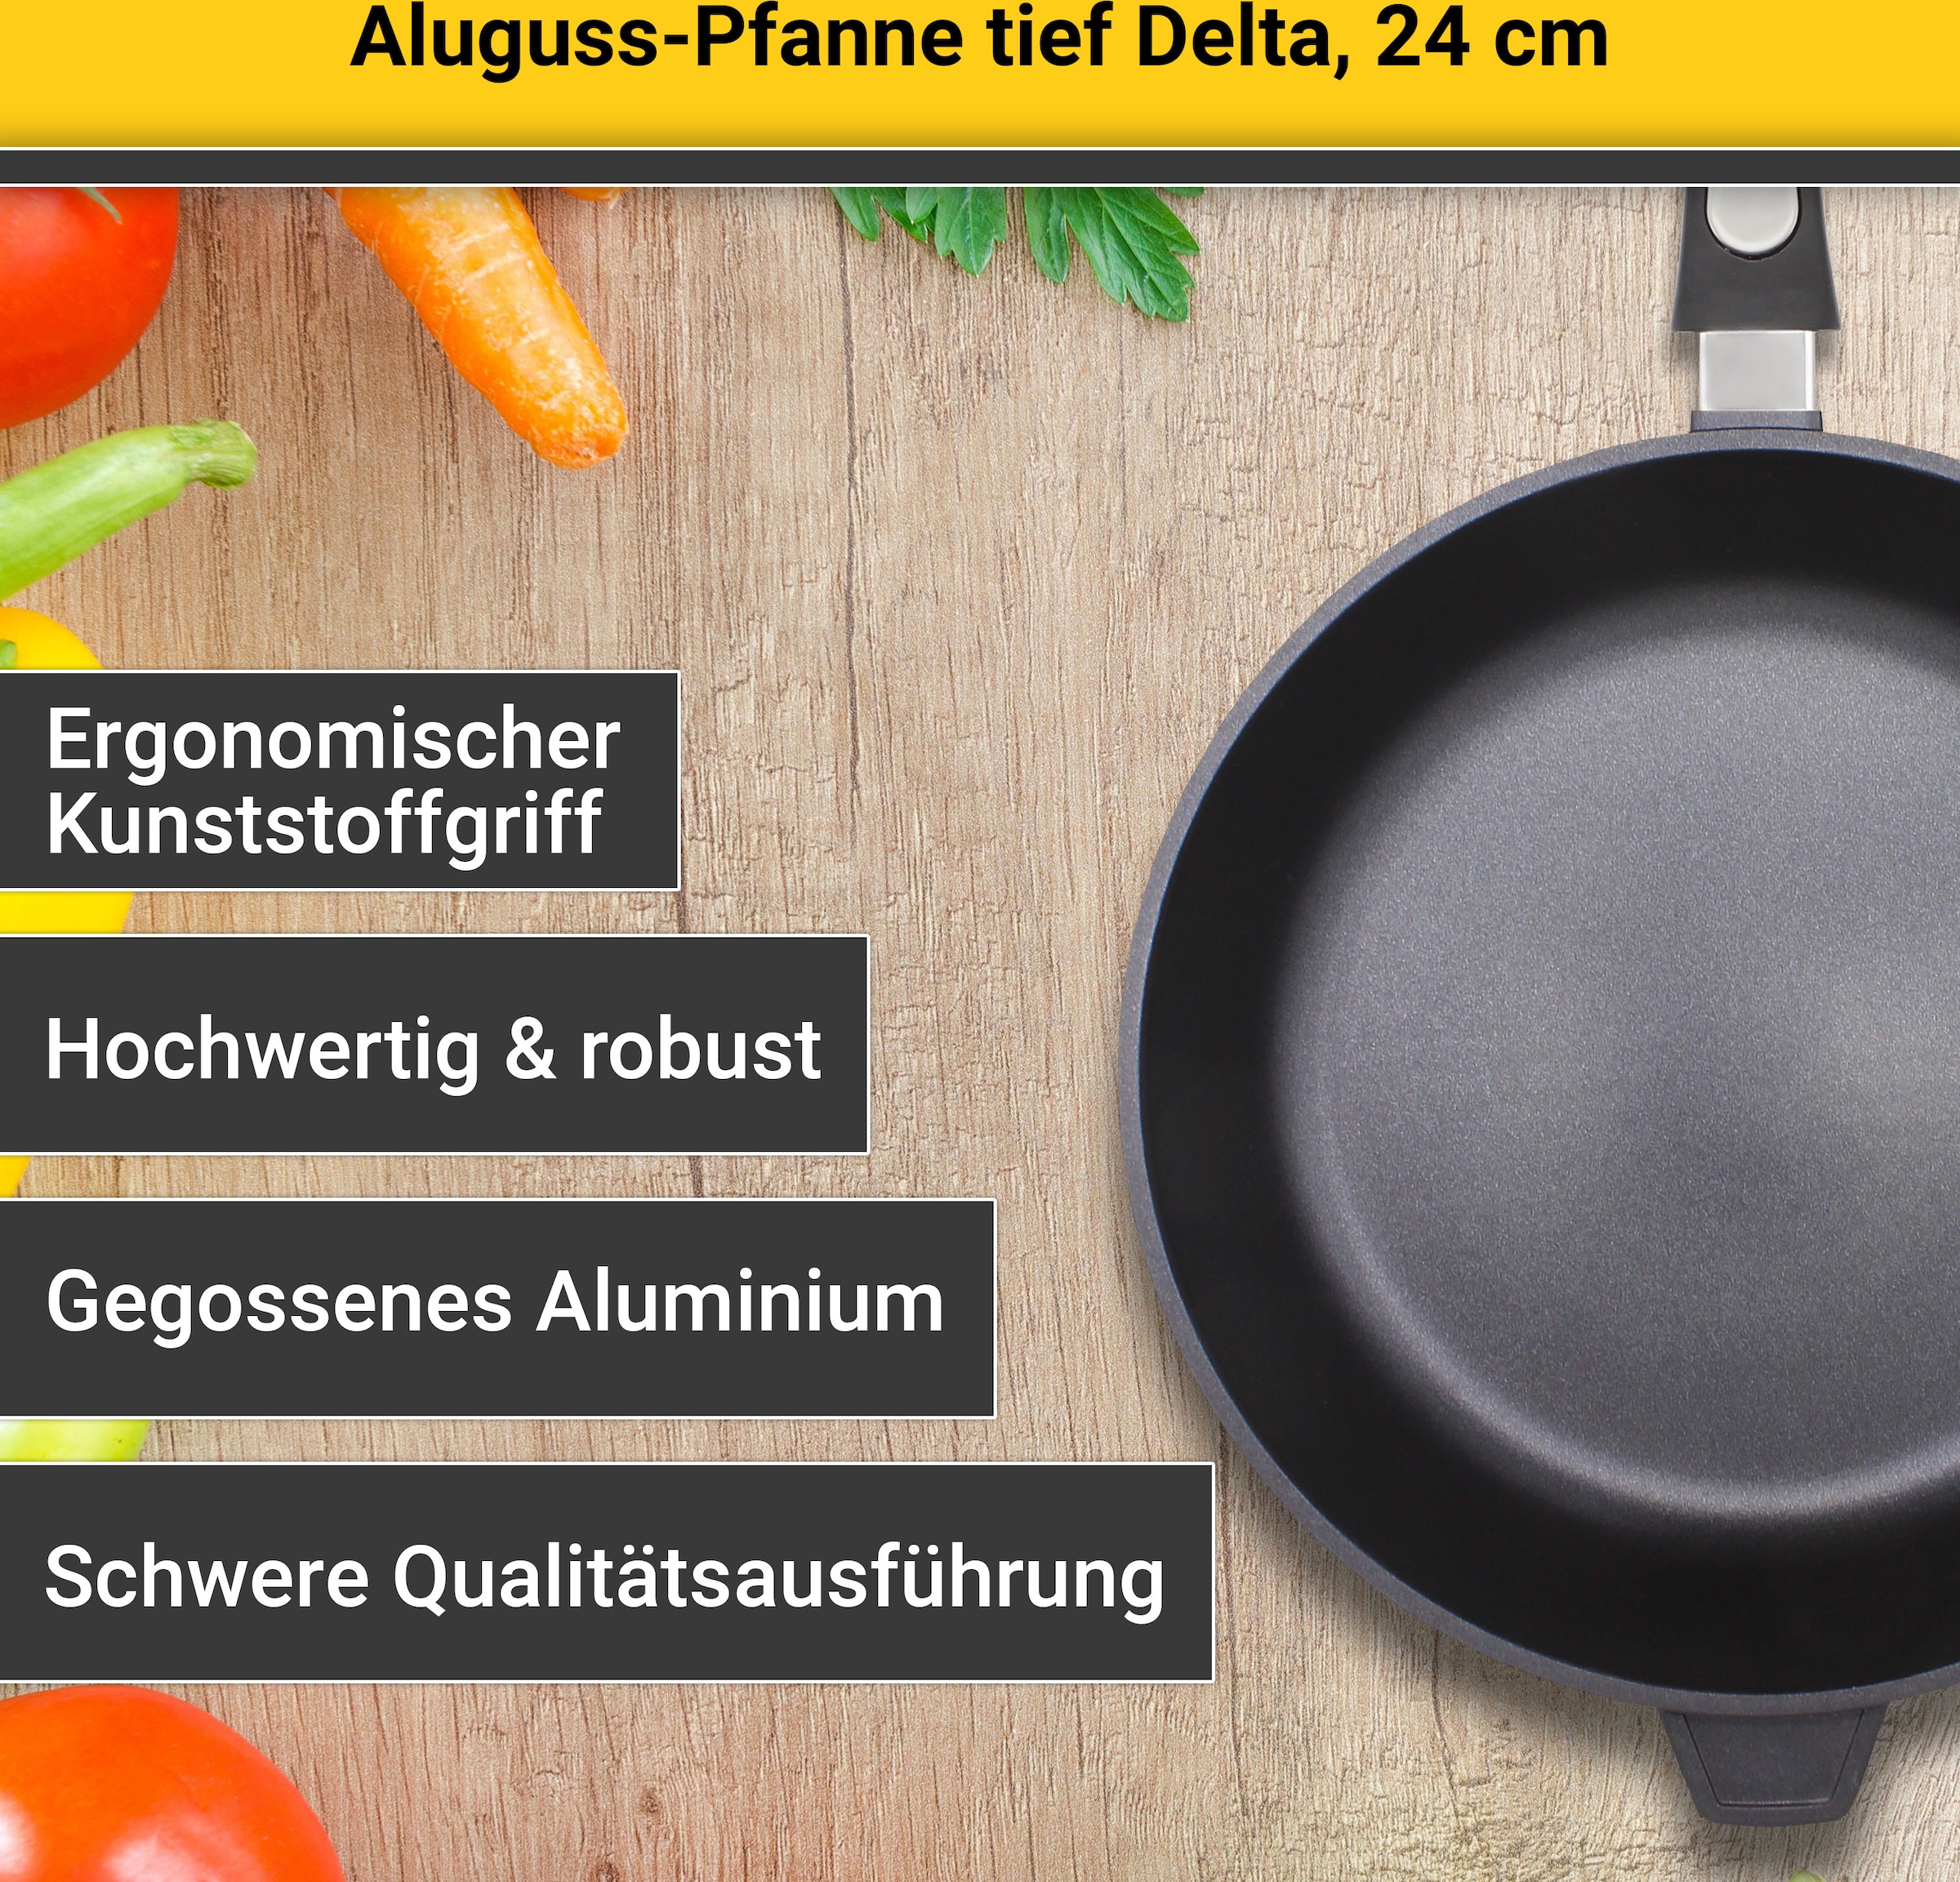 Krüger Bratpfanne »Aluguss Pfanne tief DELTA, 24 cm«, Aluminiumguss, (1 tlg.), für Induktions-Kochfelder geeignet, tiefe Ausführung